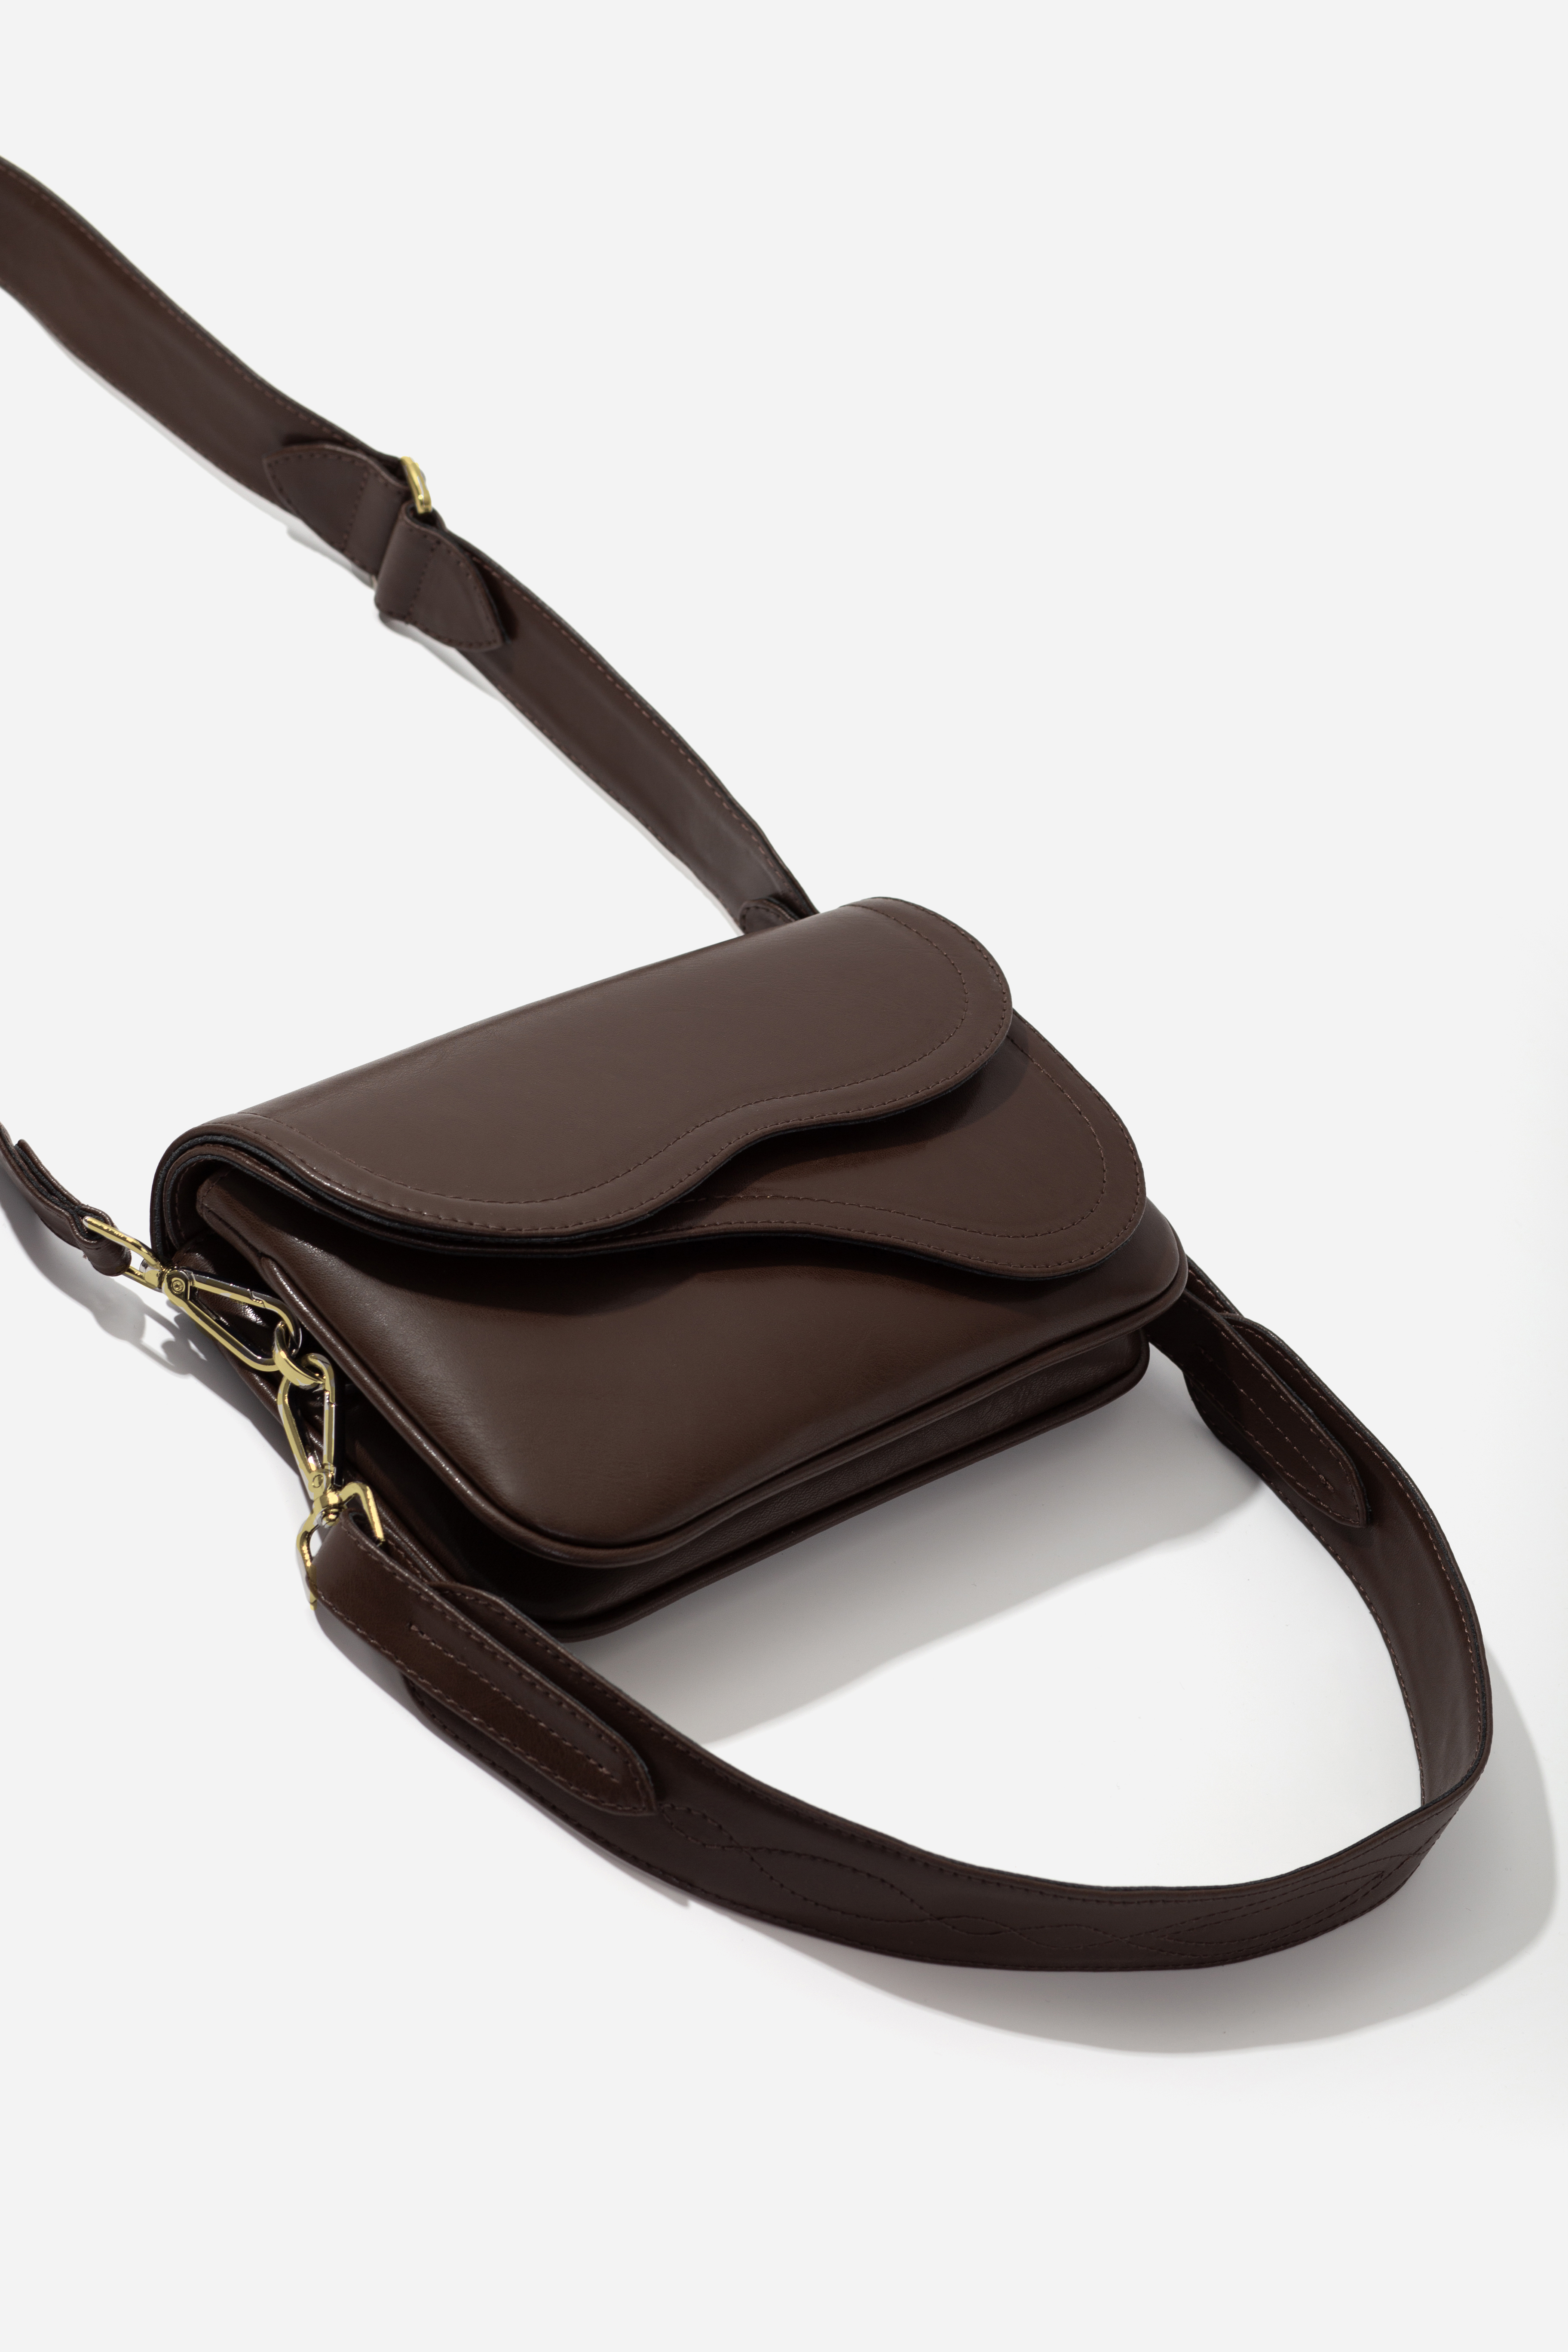 SADDLE BAG 2 сумка шоколадного відтінку /золото/